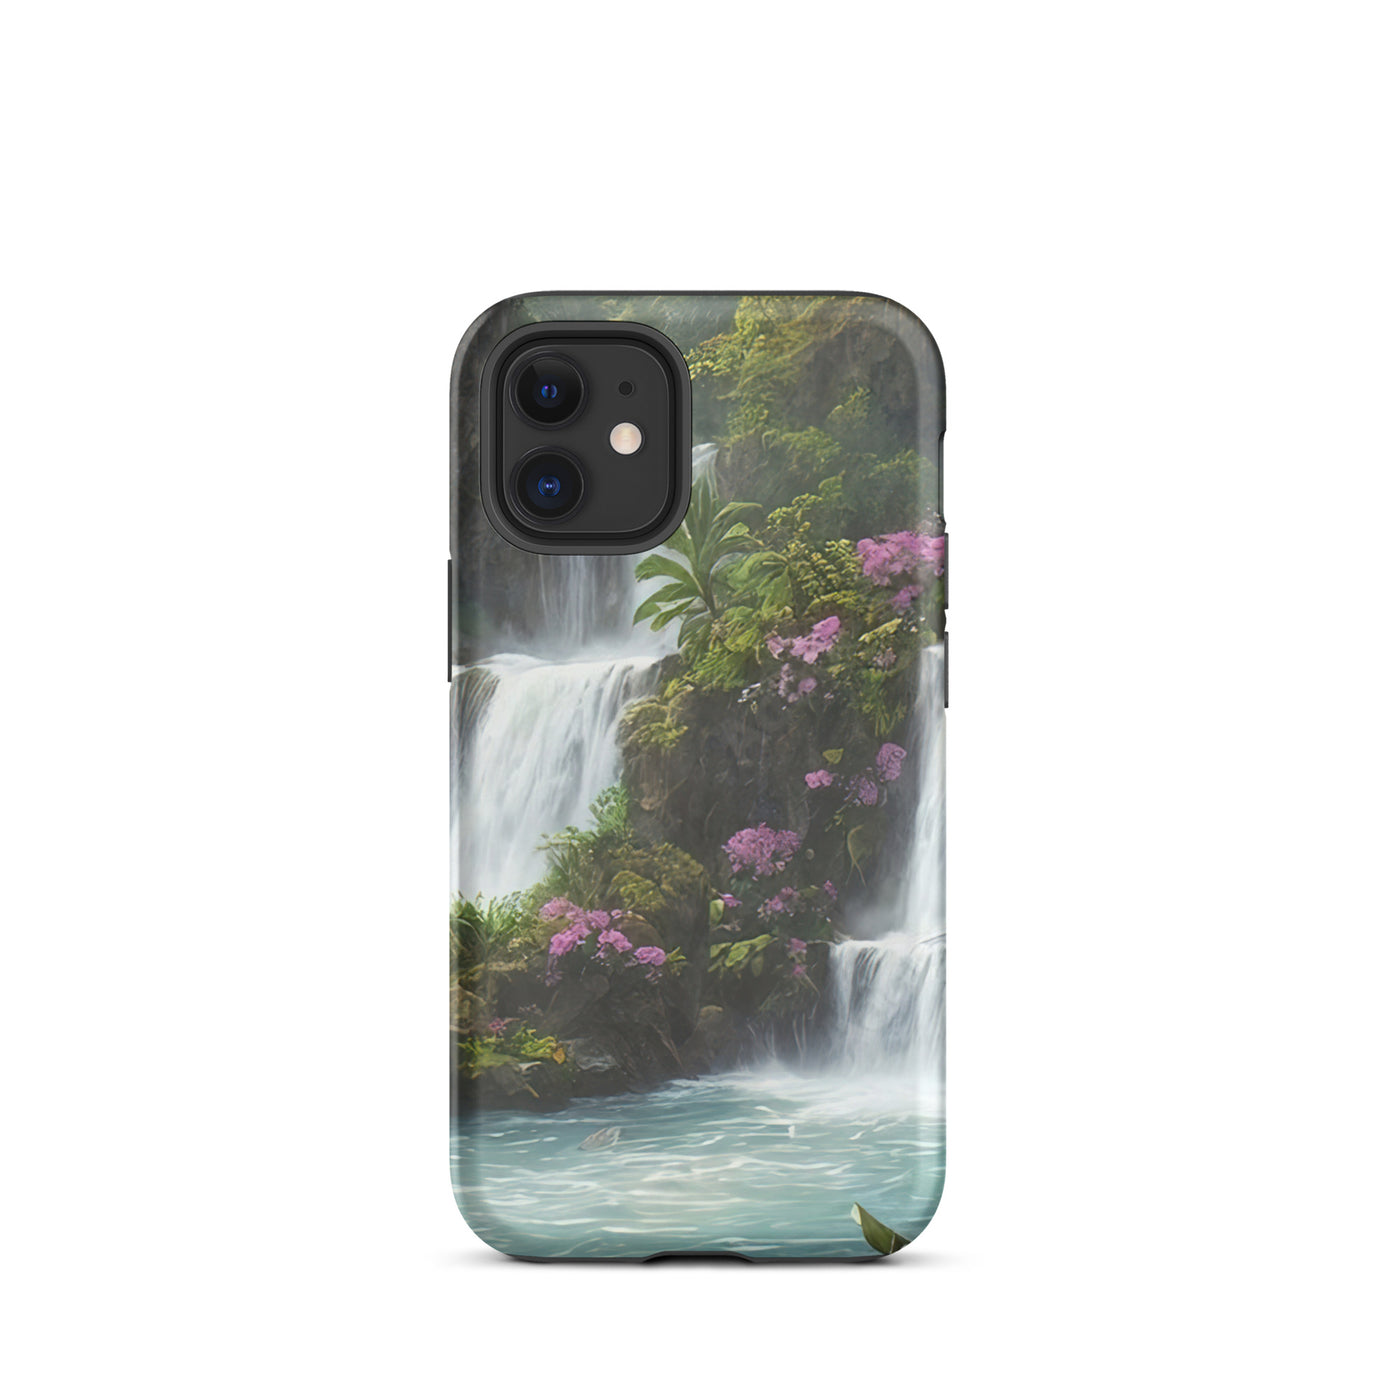 Wasserfall im Wald und Blumen - Schöne Malerei - iPhone Schutzhülle (robust) camping xxx iPhone 12 mini